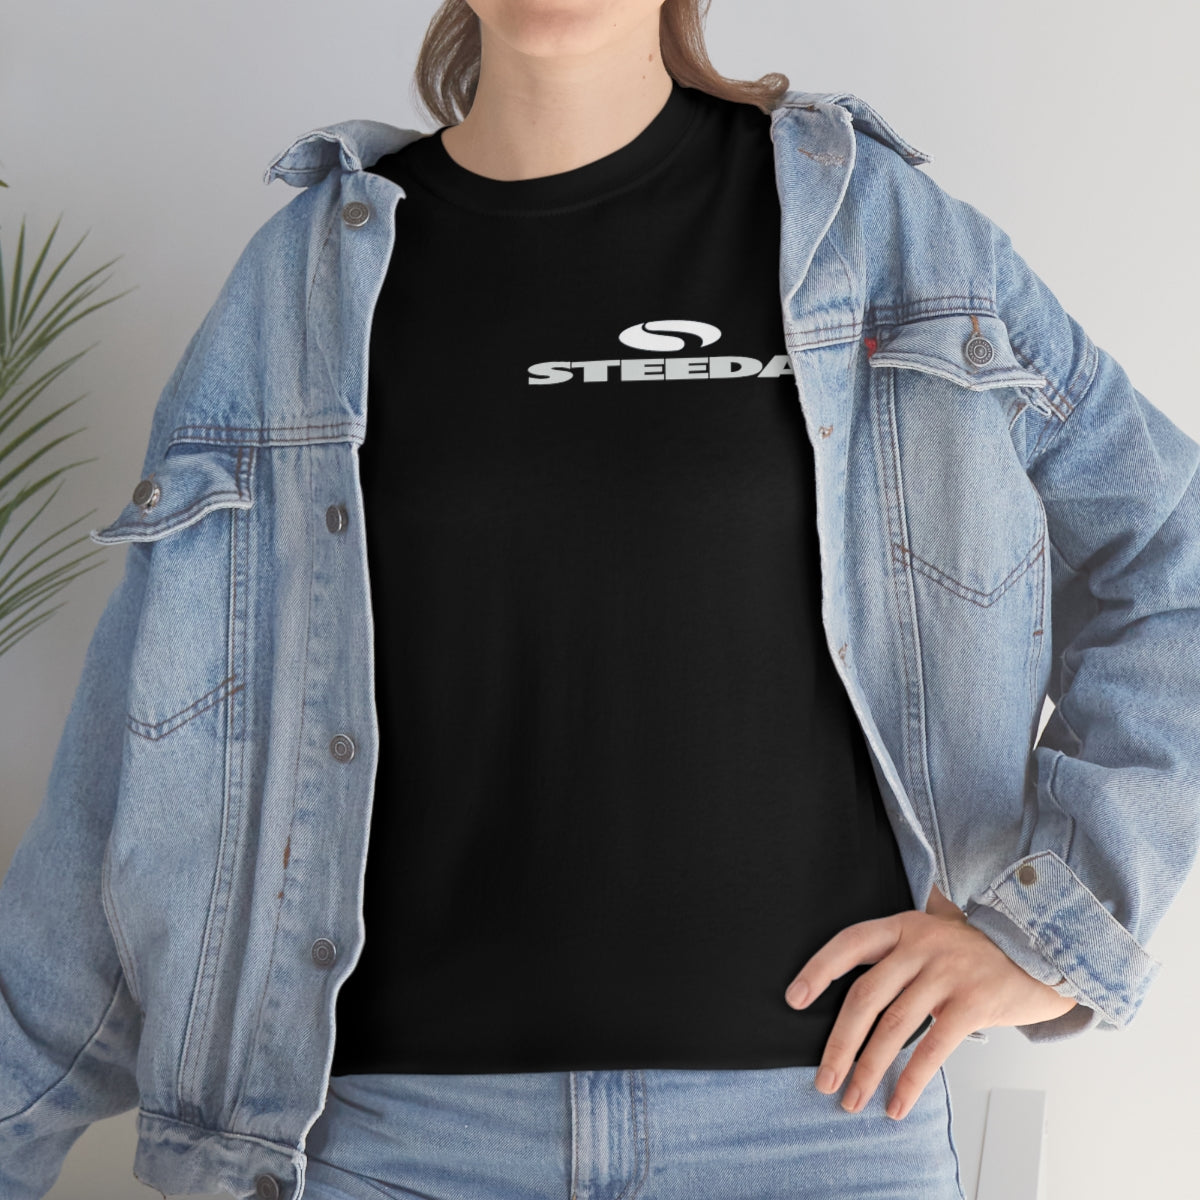 Steeda „Mustang Silhouette“ Unisex-T-Shirt aus schwerer Baumwolle in Schwarz – Design vorne und hinten